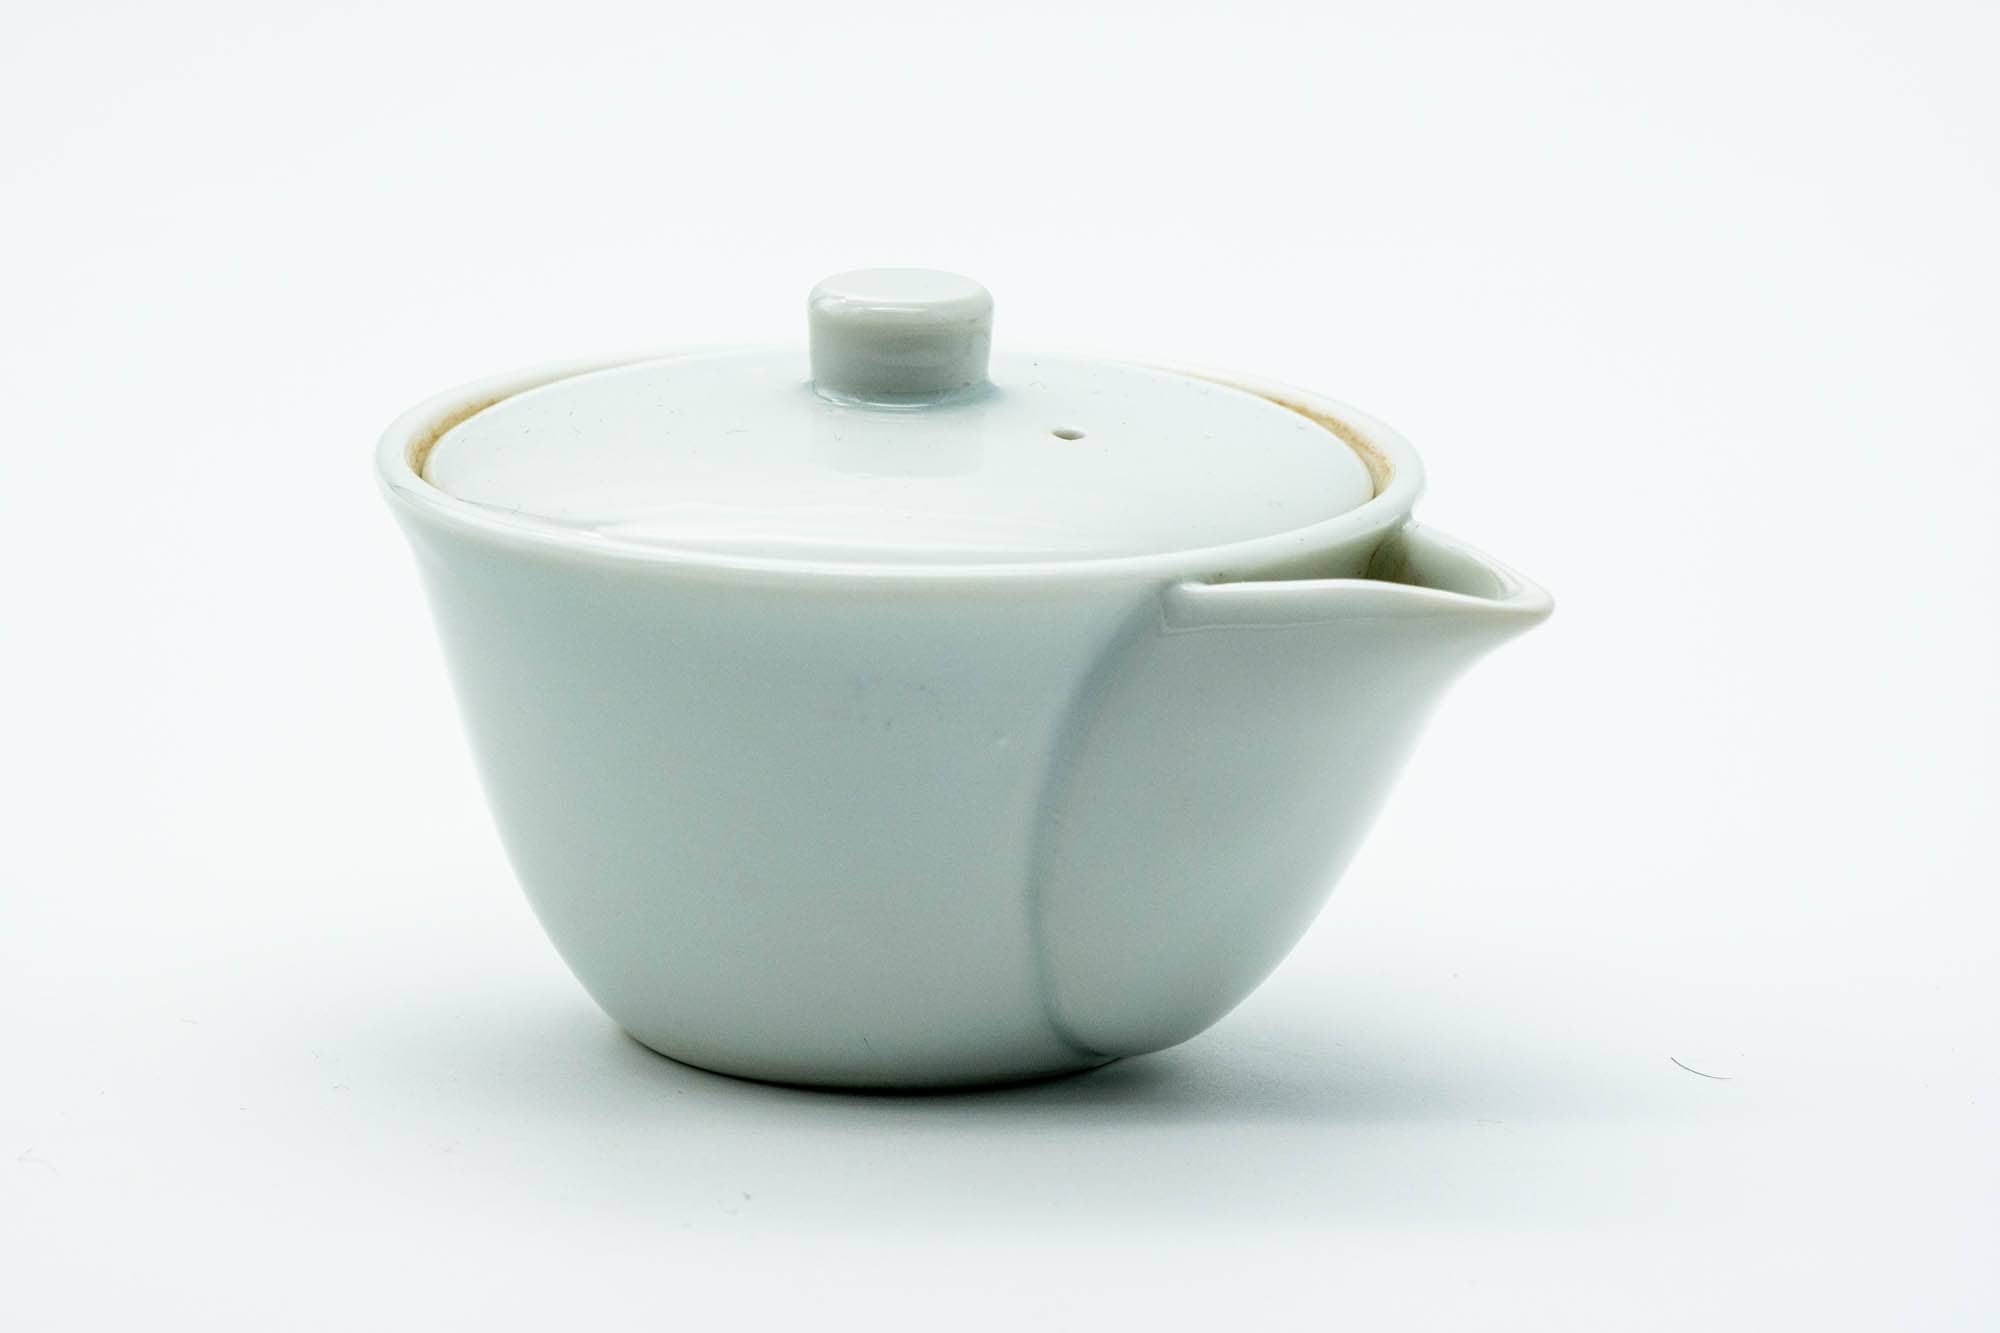 Japanese Houhin - White Porcelain Arita-yaki Ceramic Filter Teapot - 140ml